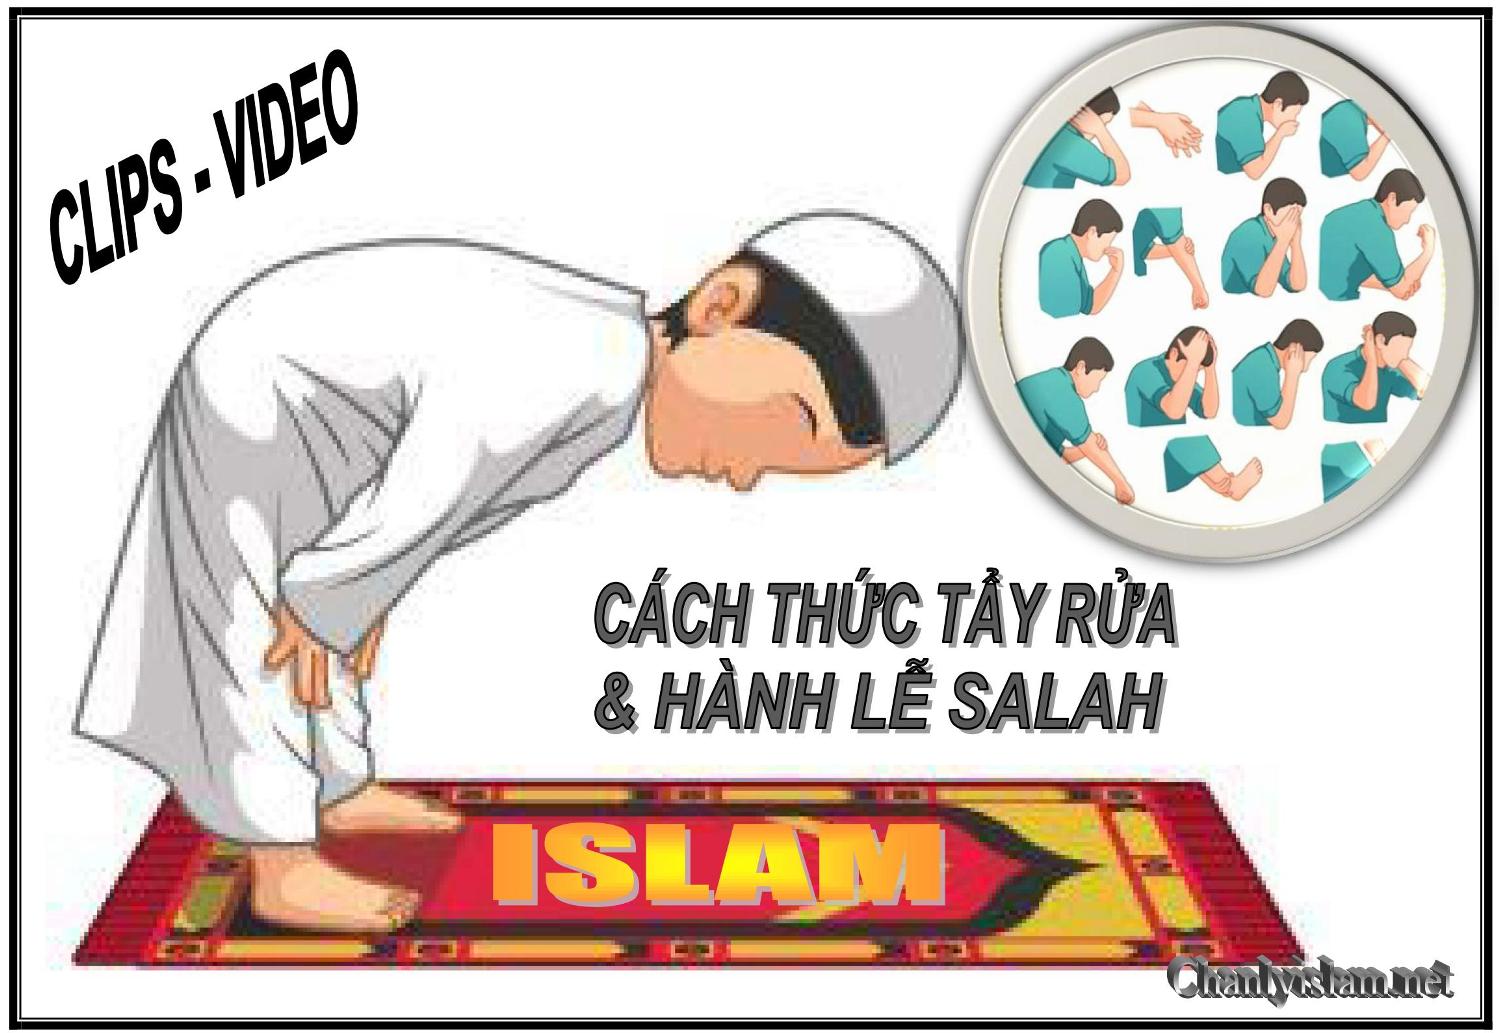 CLIPS VIDEO CÁCH THỨC TẨY THỂ (LẤY NƯỚC WUDU) & HÀNH LỄ SALAH TRONG TÔN GIÁO ISLAM